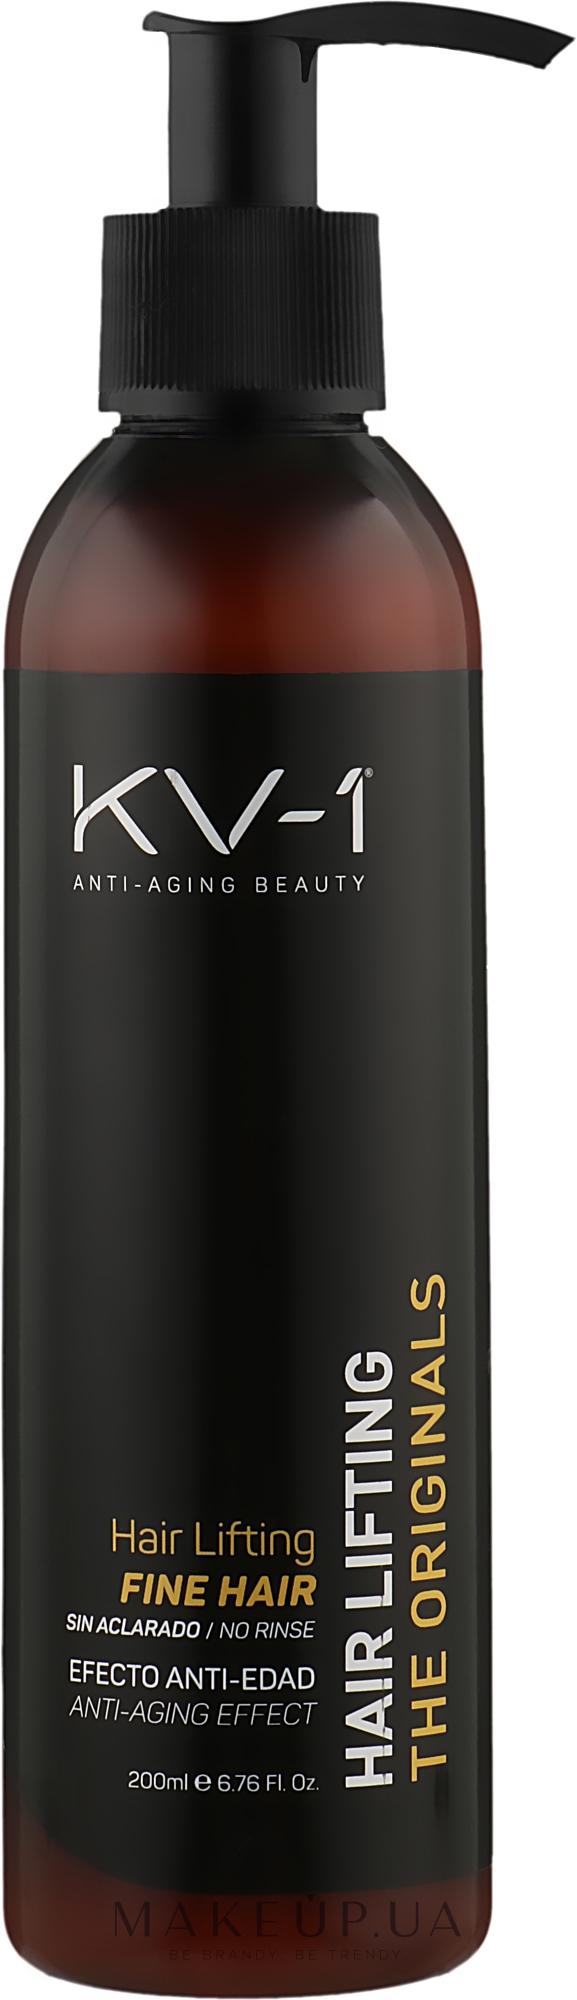 Несмываемый крем-лифтинг для тонких волос - KV-1 The Originals Hair Lifting Fine Hair Cream  — фото 200ml